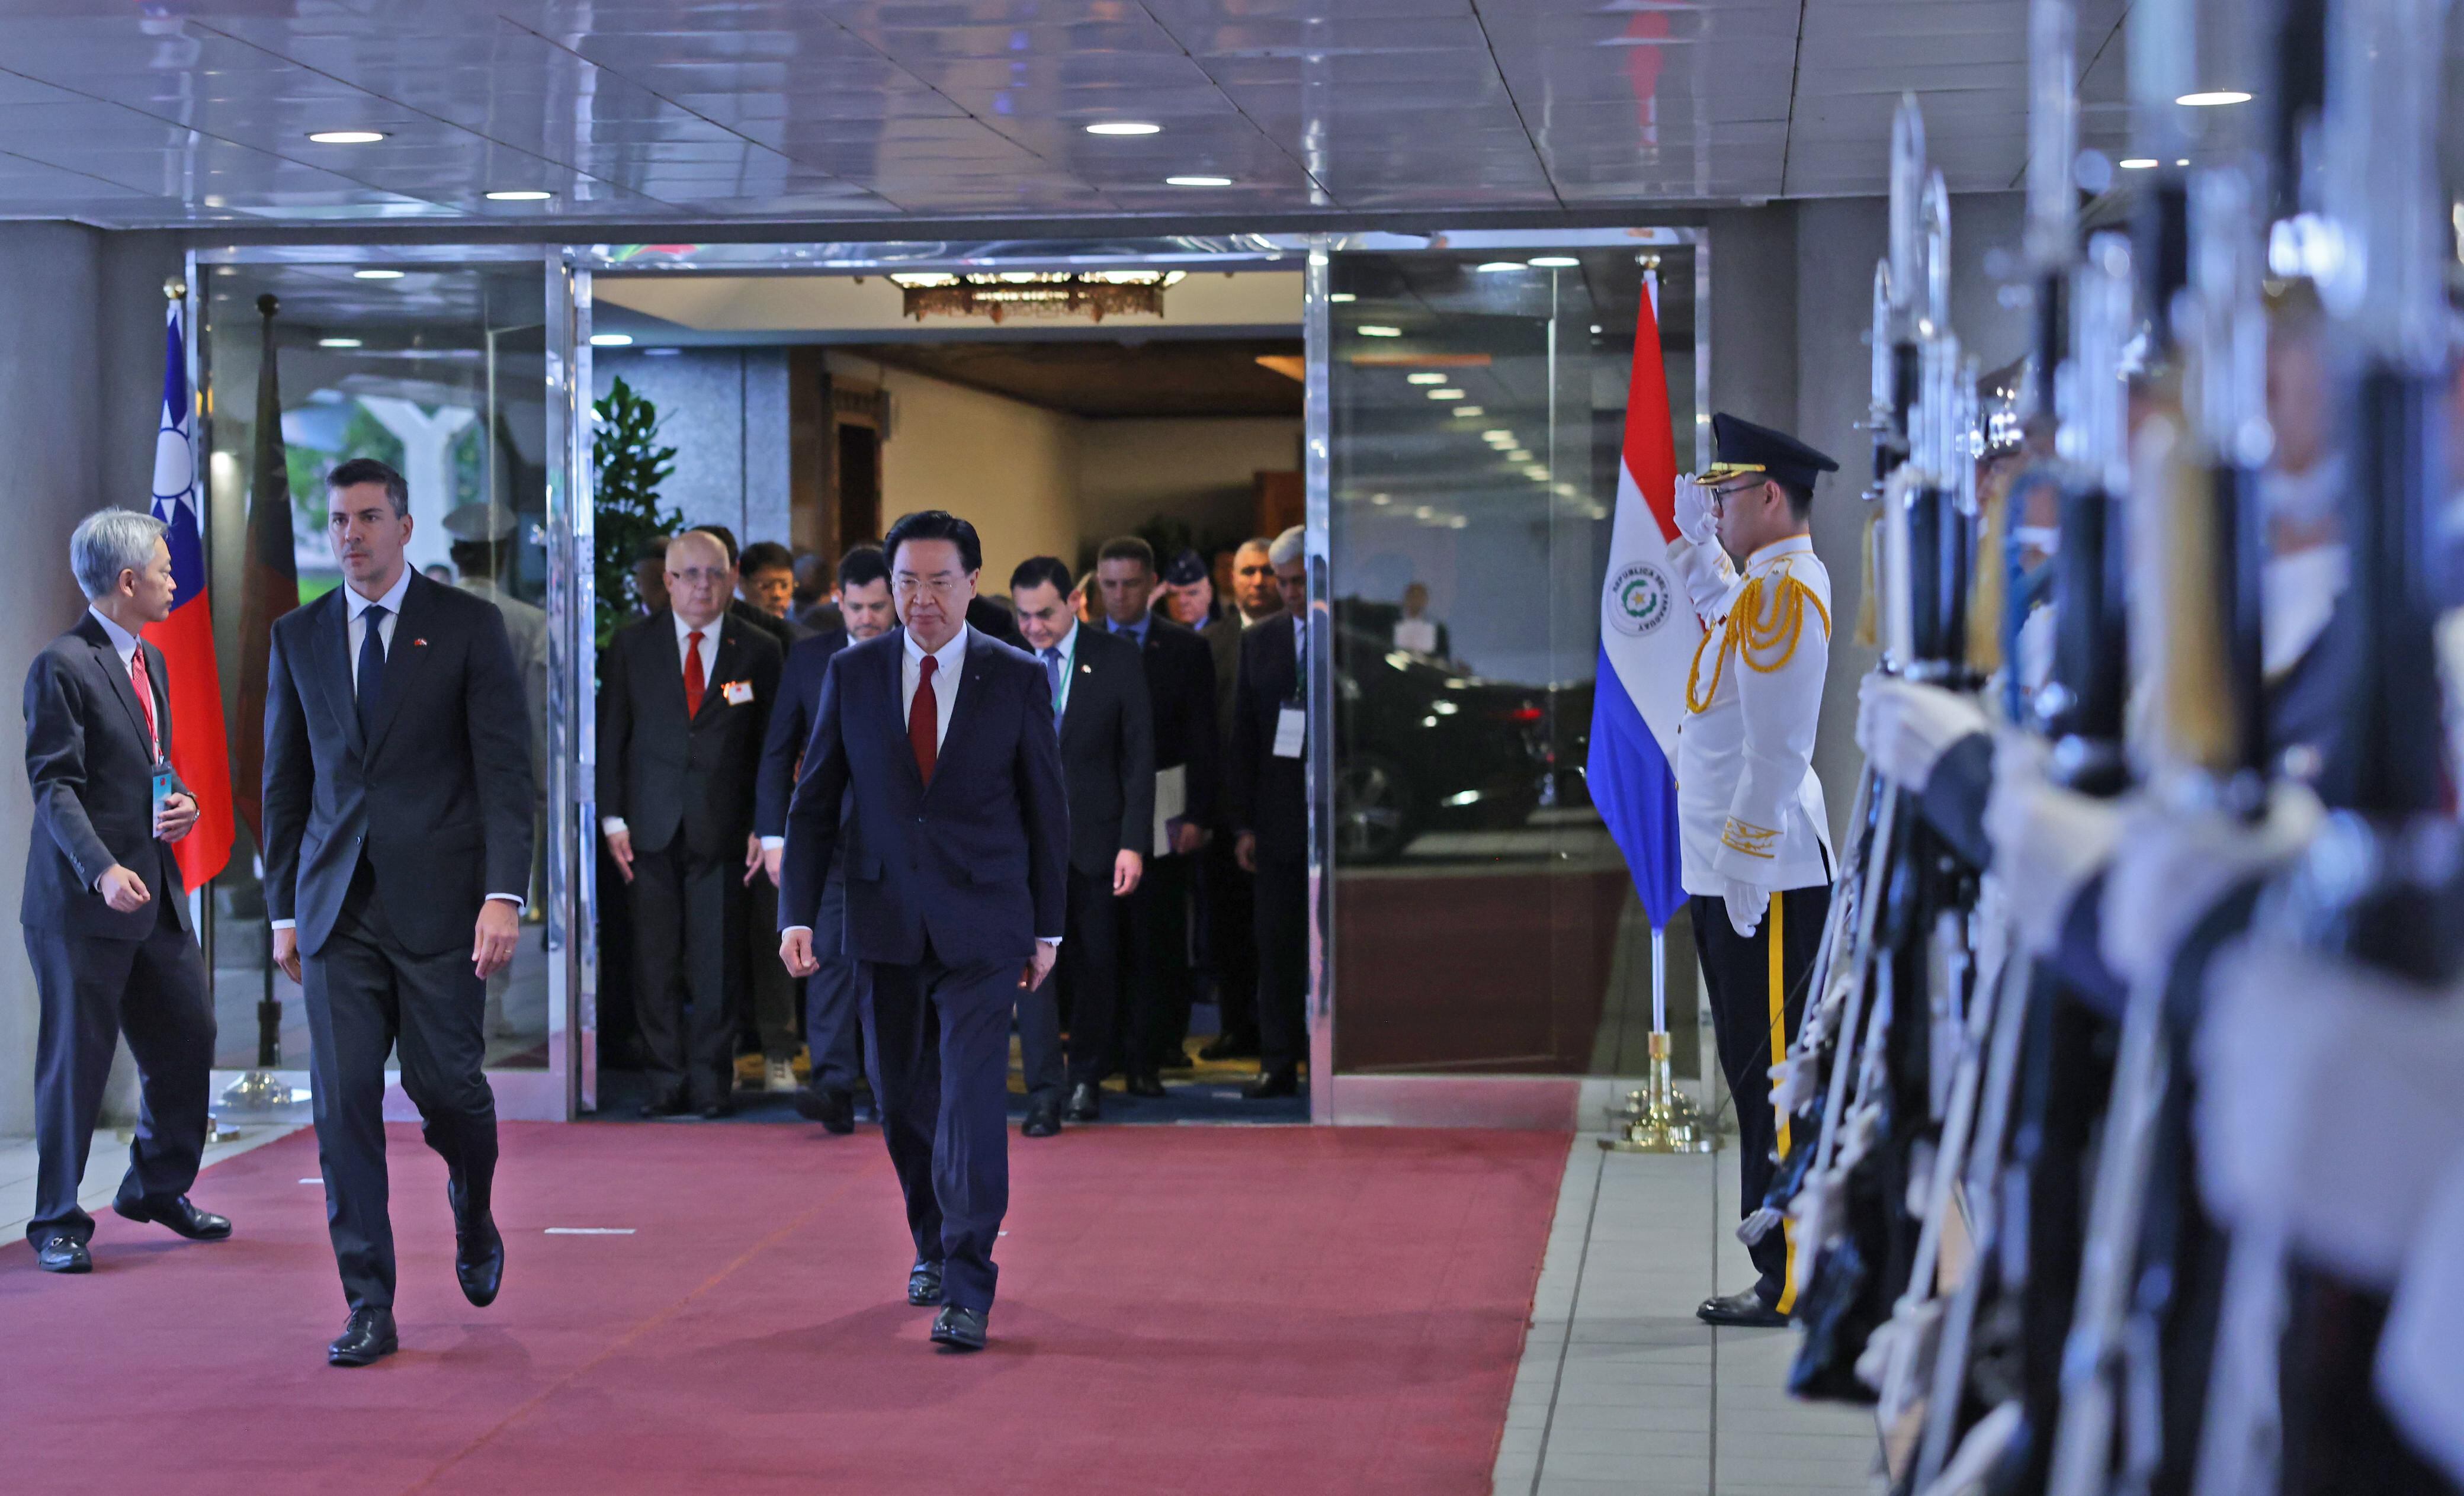 El Presidente de la República de Paraguay, Santiago Peña, y la comitiva, fueron recibidos por Canciller taiwanés, Joseph Wu en Taipéi, Taiwán.